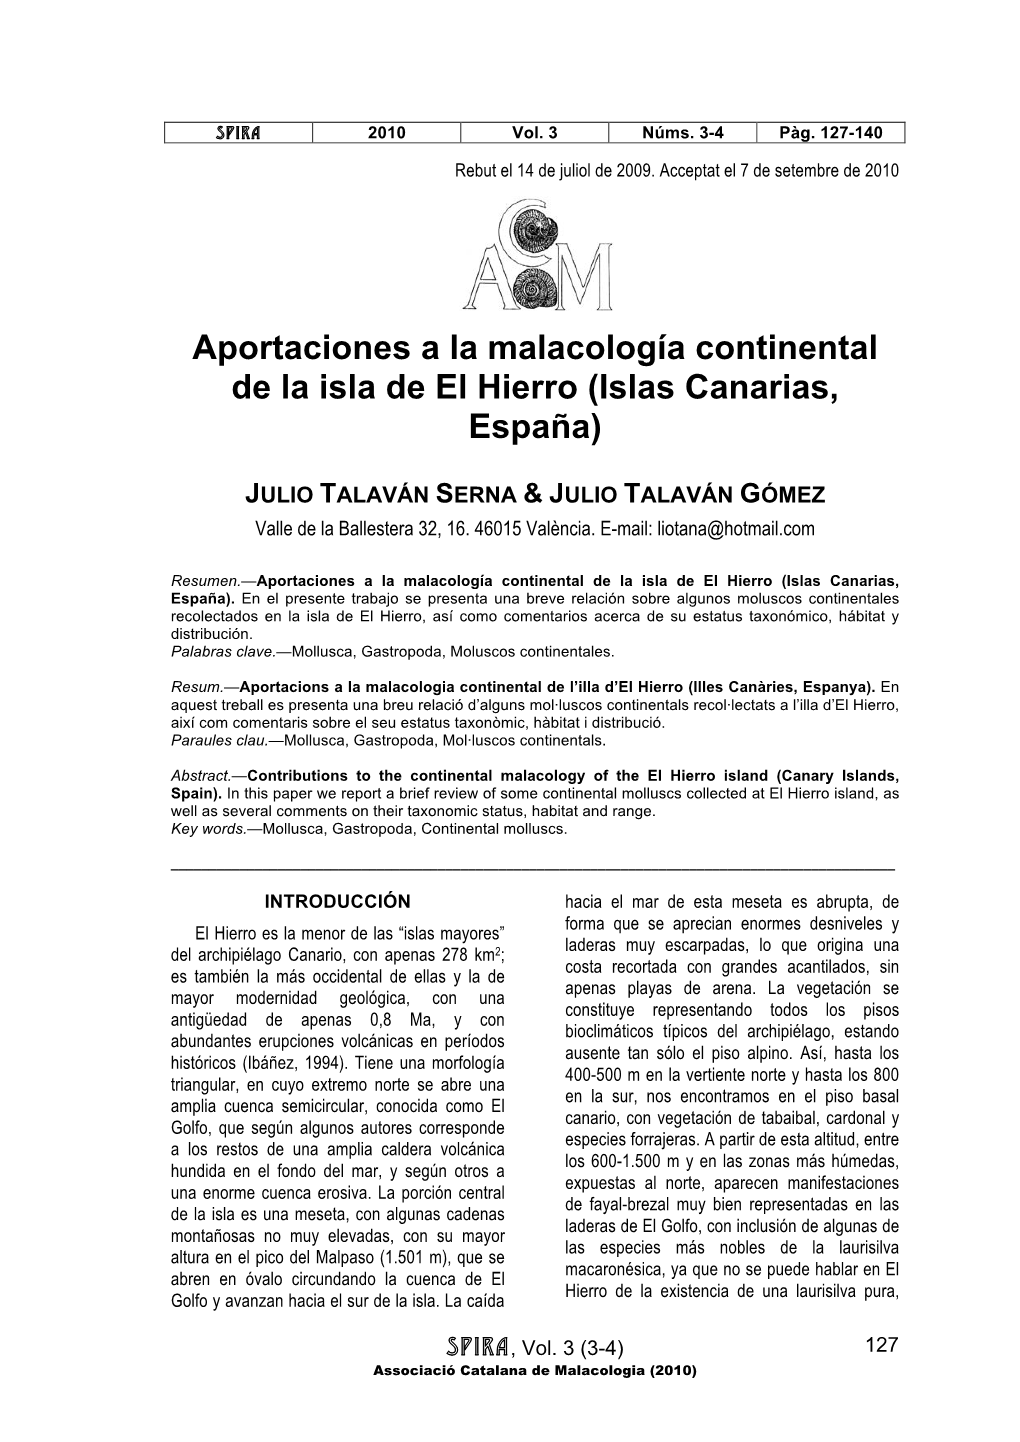 Aportaciones a La Malacología Continental De La Isla De El Hierro (Islas Canarias, España)